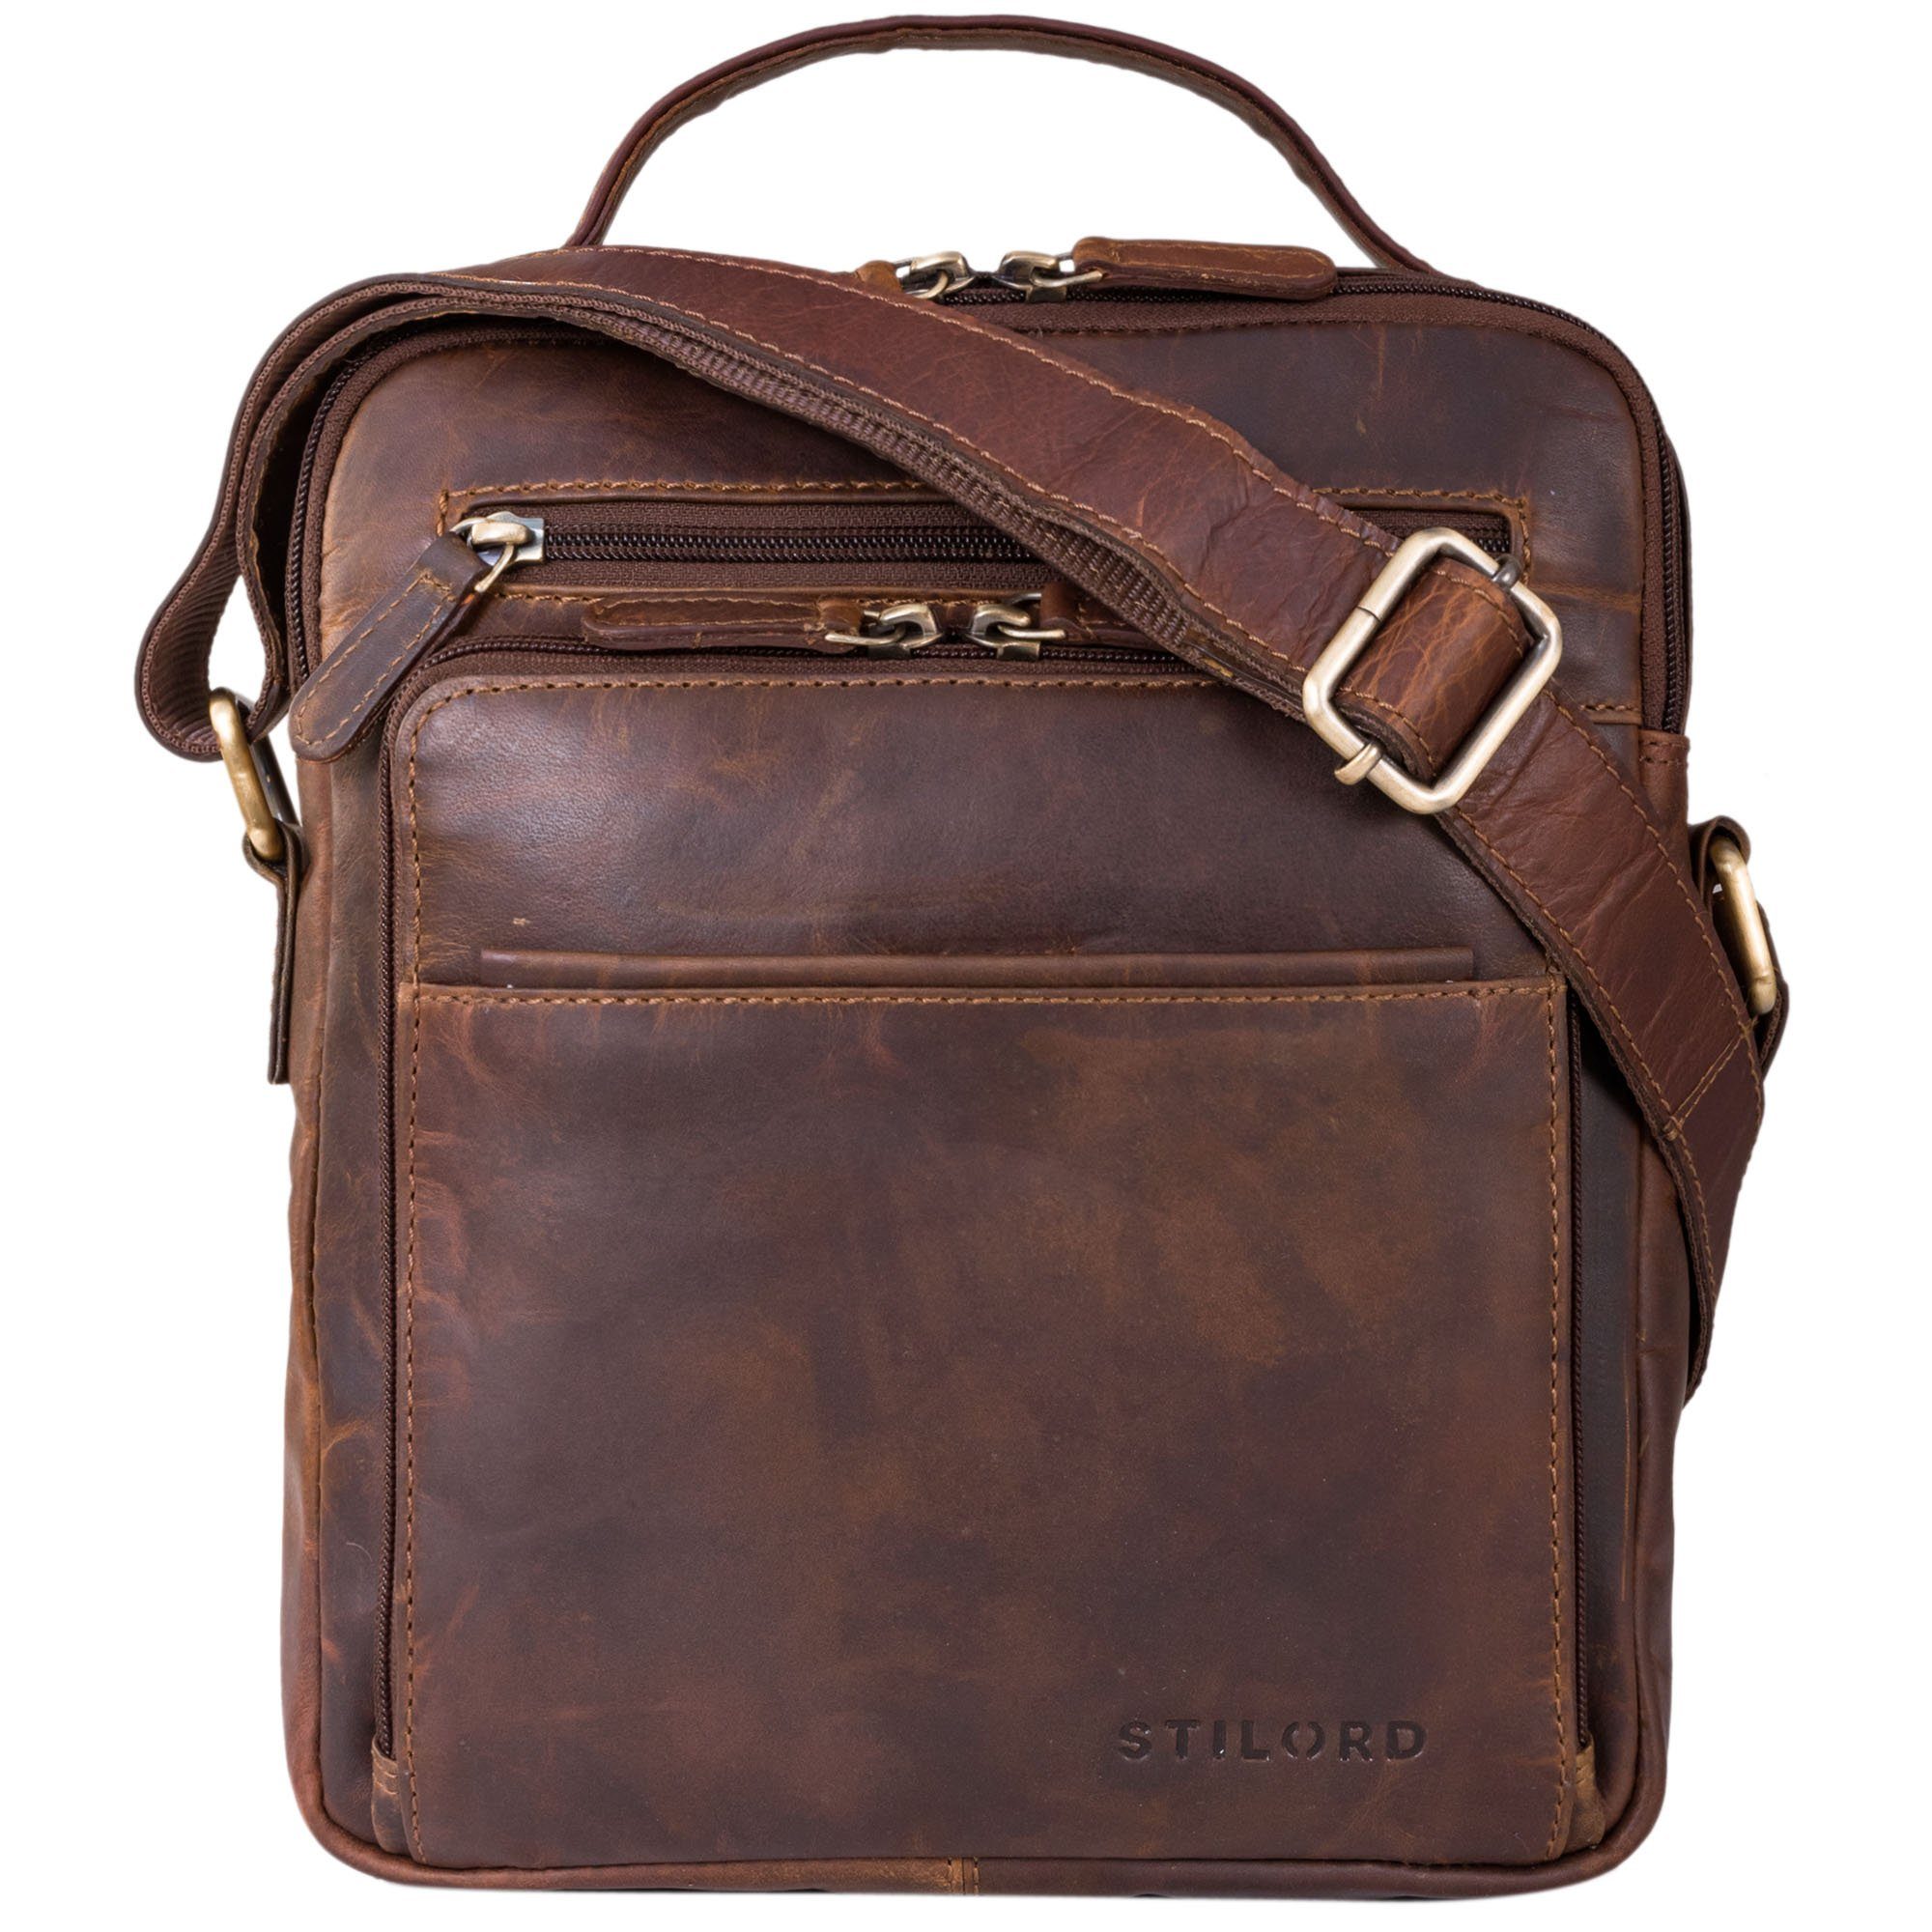 STILORD Messenger Bag "Ivan" Modische Männerhandtasche aus Premium Leder cognac - dunkelbraun